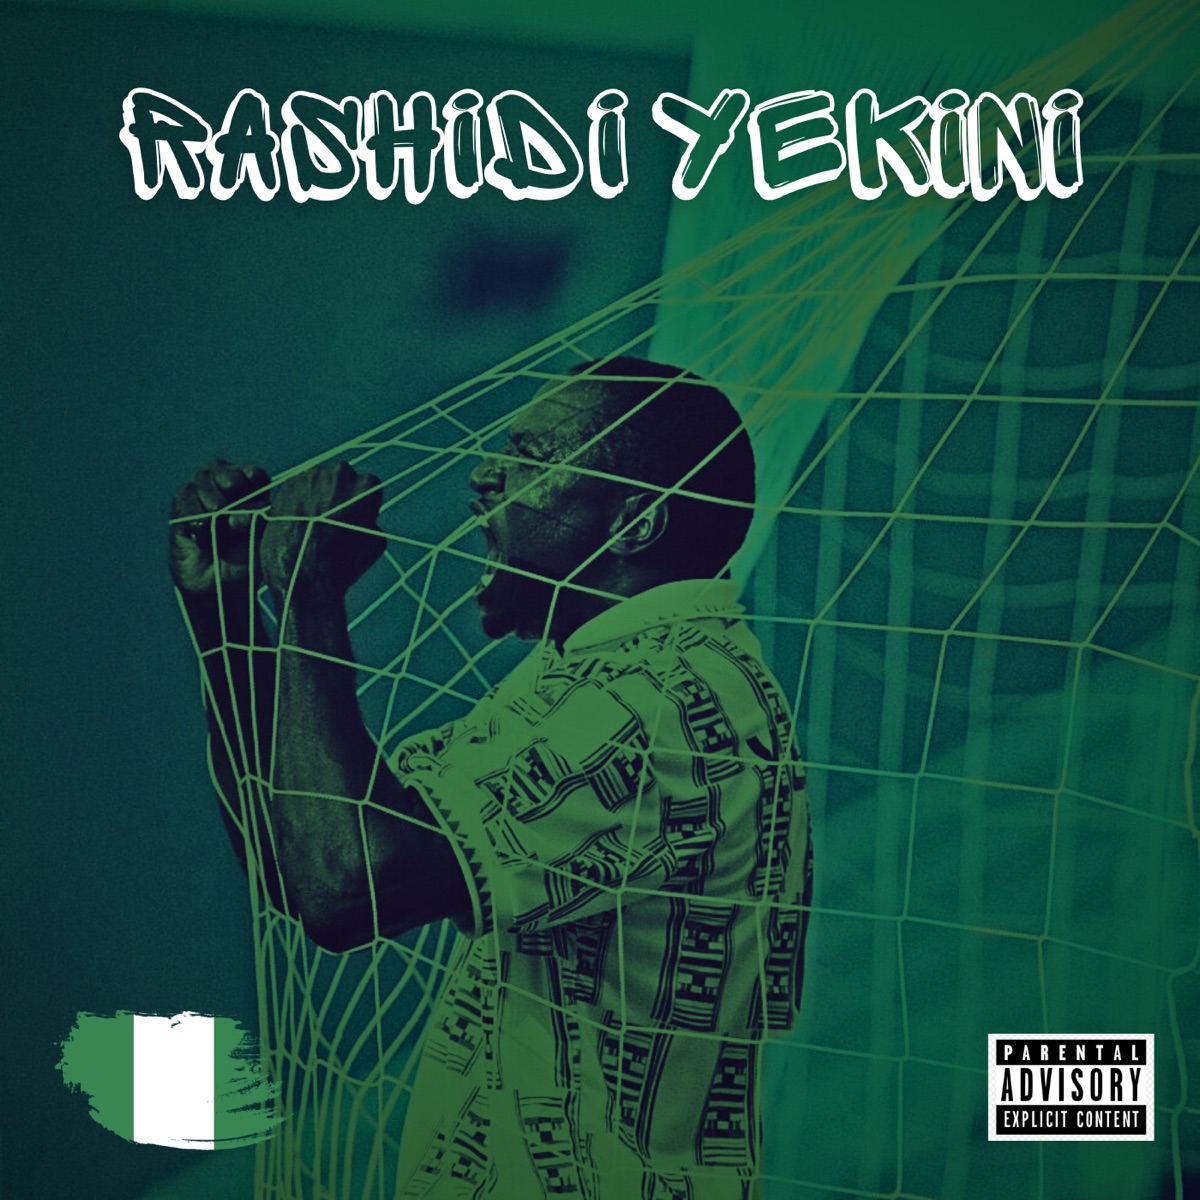 Qeeb &Amp; Oluwamillar - Rashidi Yekini, Yours Truly, Music, May 9, 2024